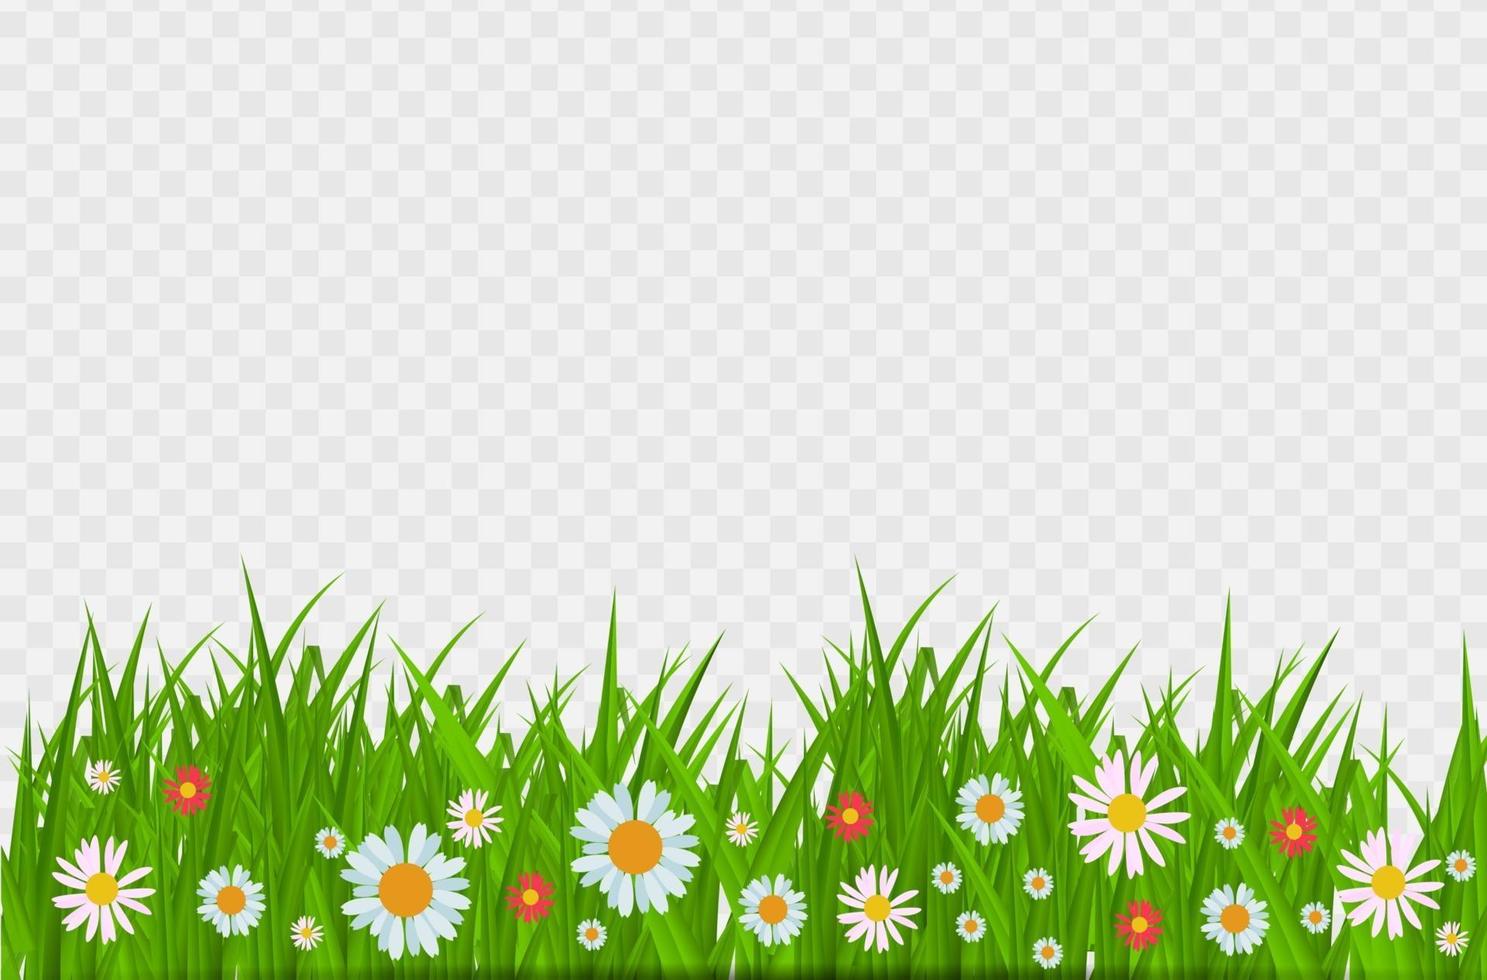 Brighgrass und Blumengrenze, Grußkartendekorationselement für Ostern auf einem transparenten Hintergrund. Vektor-Illustration saftiges grünes Gras auf einem transparenten Hintergrund. Vektor-Illustration. vektor